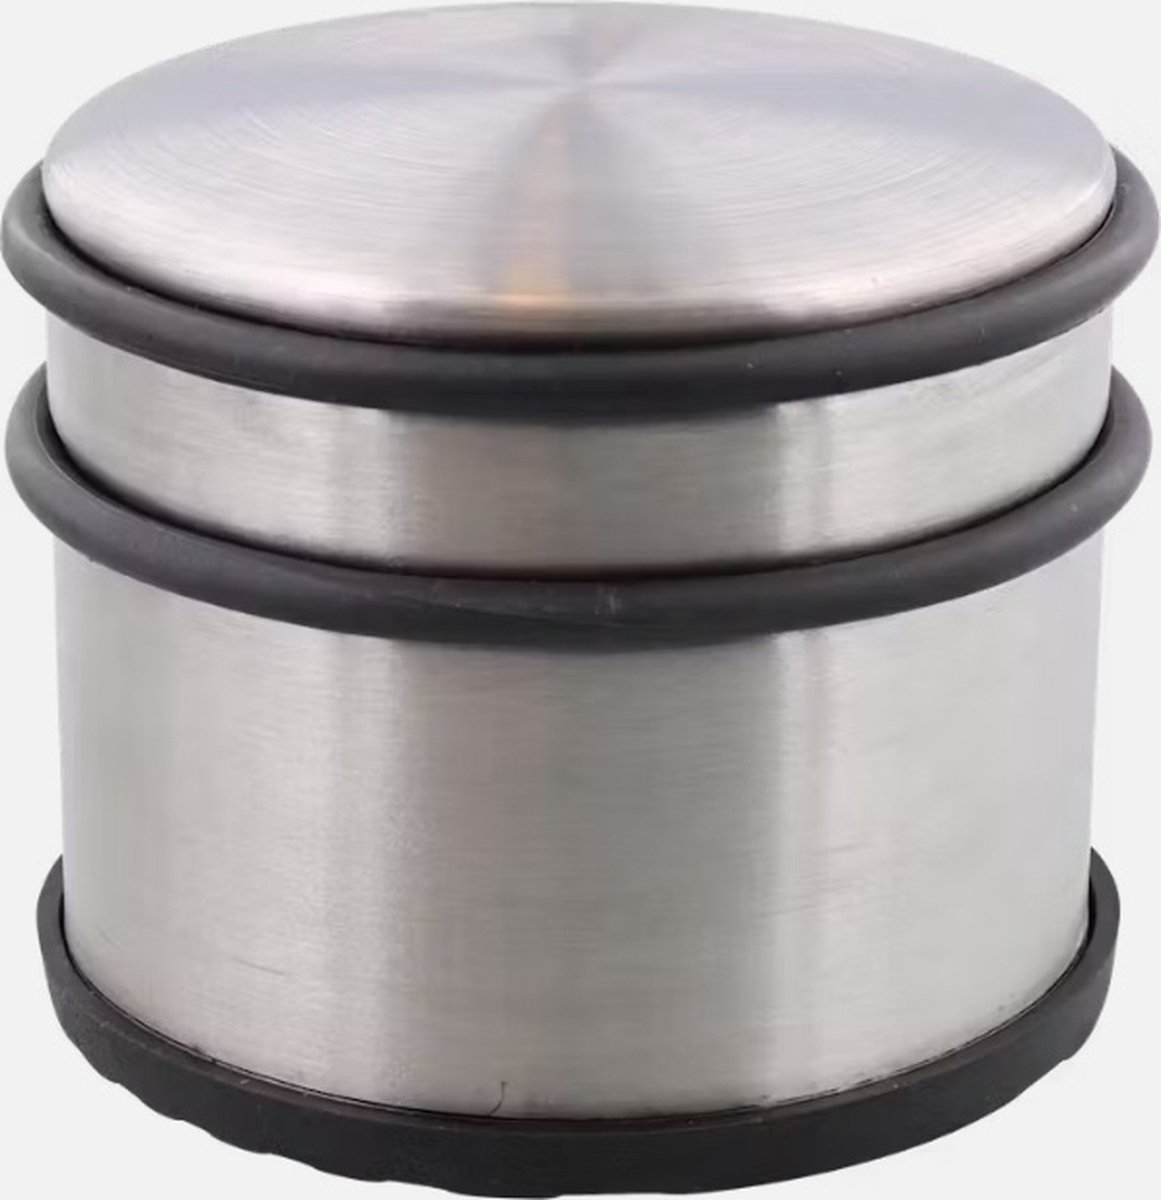 Deurstopper - Roestvrij staal - Rubberen anti-slipvoet - 11 cm - Voor binnen en buiten